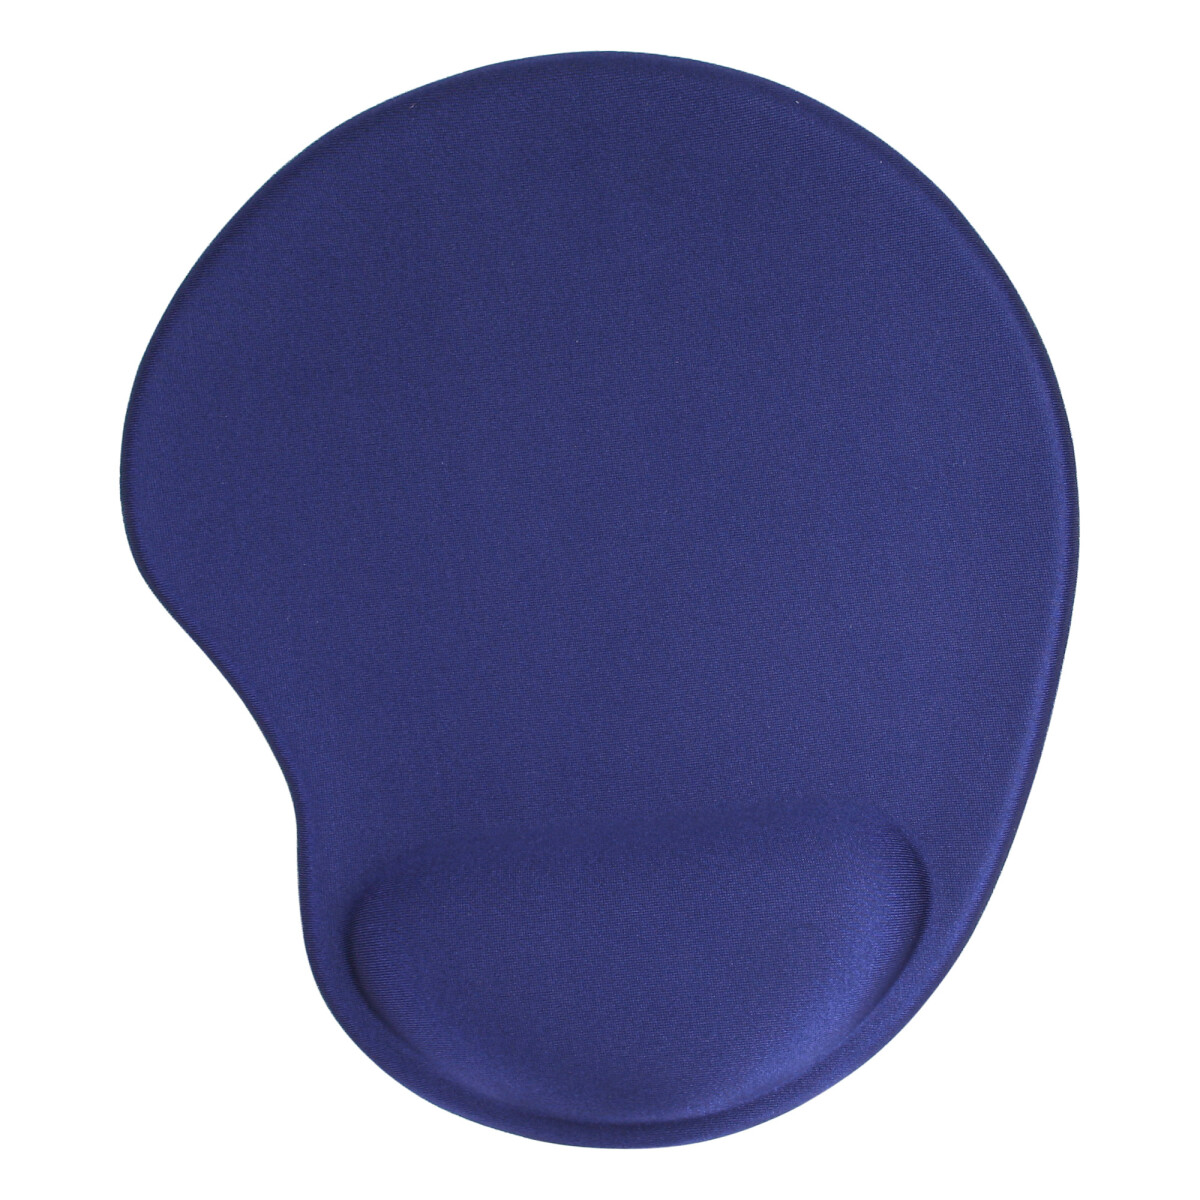 InLine® Mouse pad, gel wrist rest, 230x205x20mm, blue